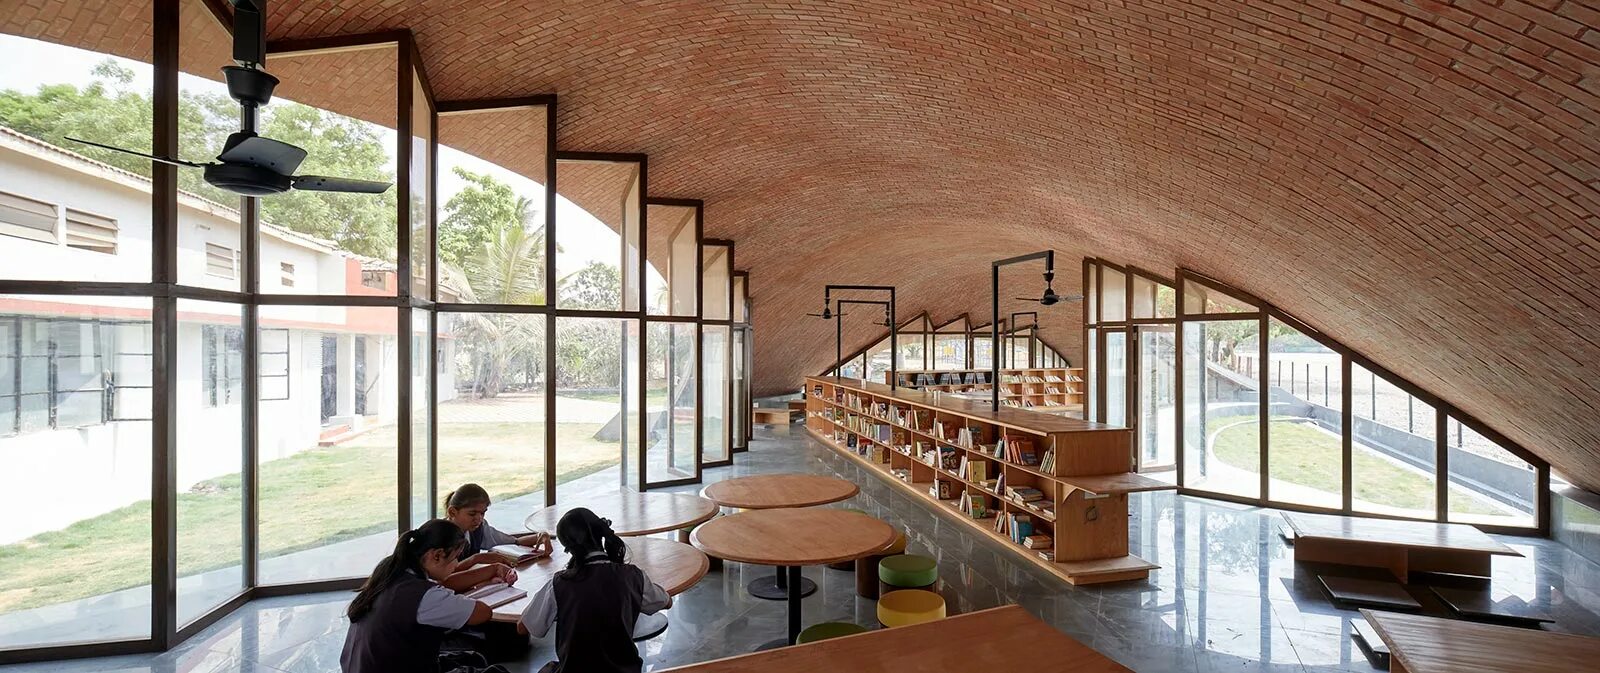 Кирпичные острова 6 вопросов. Библиотека на крыше. Библиотека в Индии. Кровля для библиотеки. Библиотека в необычном стиле.